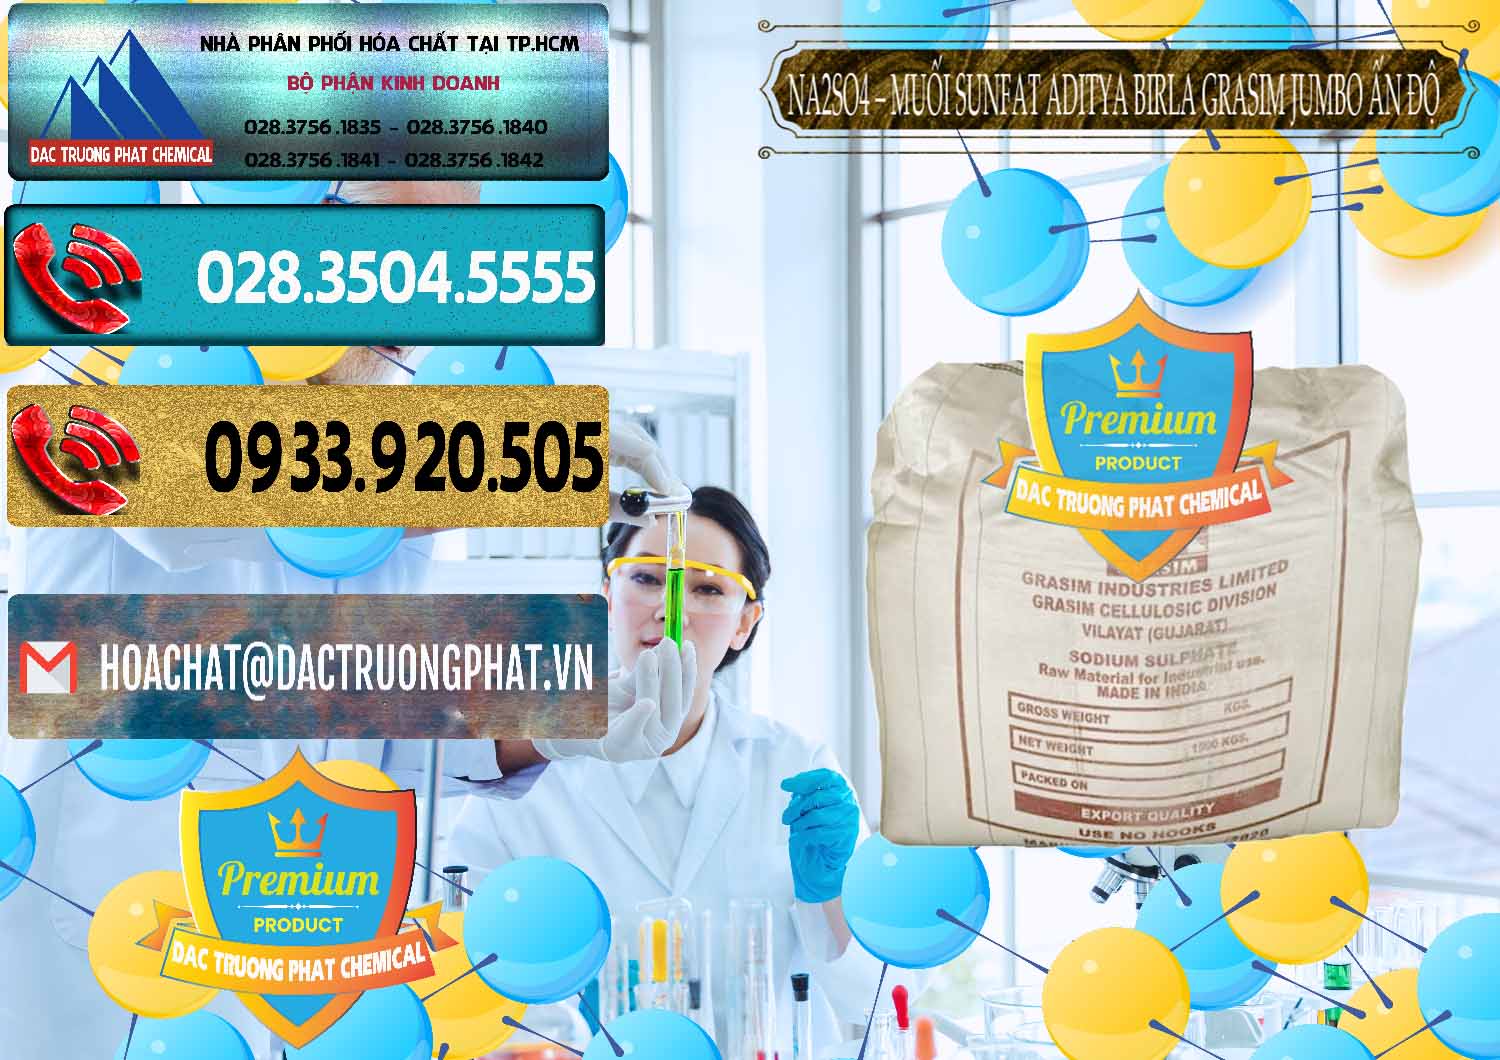 Đơn vị nhập khẩu và bán Sodium Sulphate - Muối Sunfat Na2SO4 Jumbo Bành Aditya Birla Grasim Ấn Độ India - 0357 - Cty chuyên cung cấp - kinh doanh hóa chất tại TP.HCM - hoachatdetnhuom.com